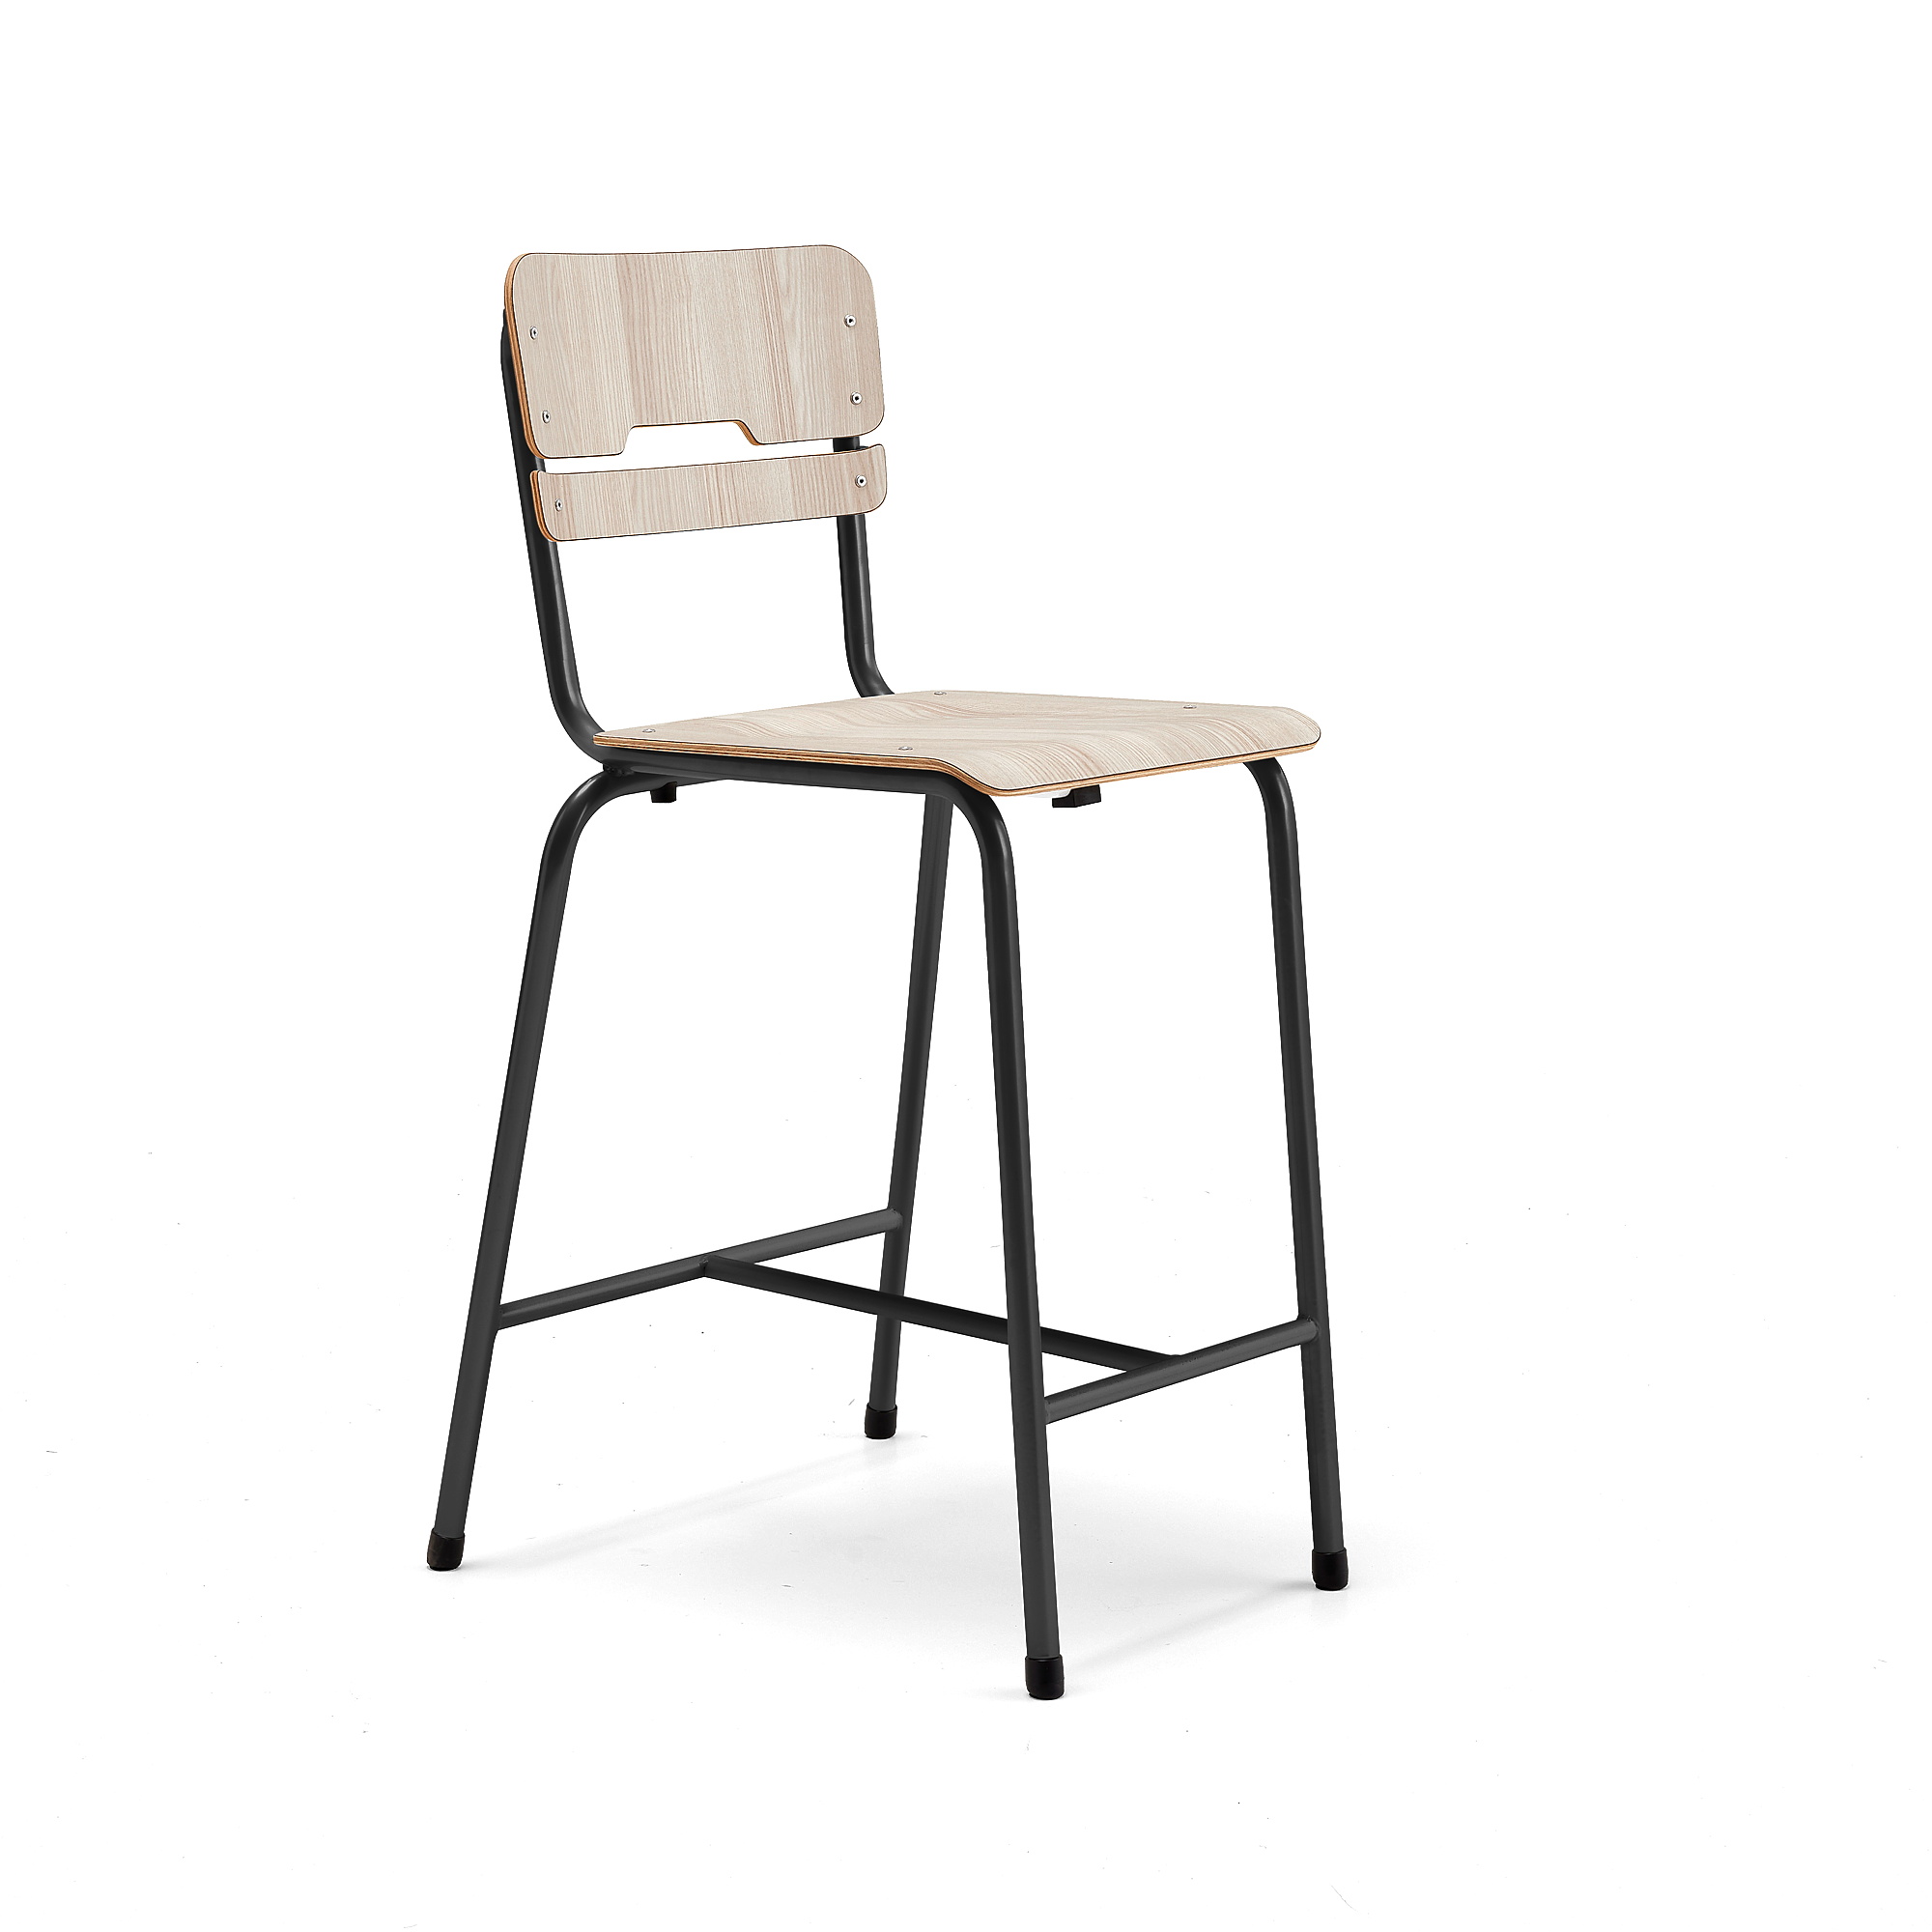 Školní židle SCIENTIA, sedák 390x390 mm, výška 650 mm, antracitová/jasan